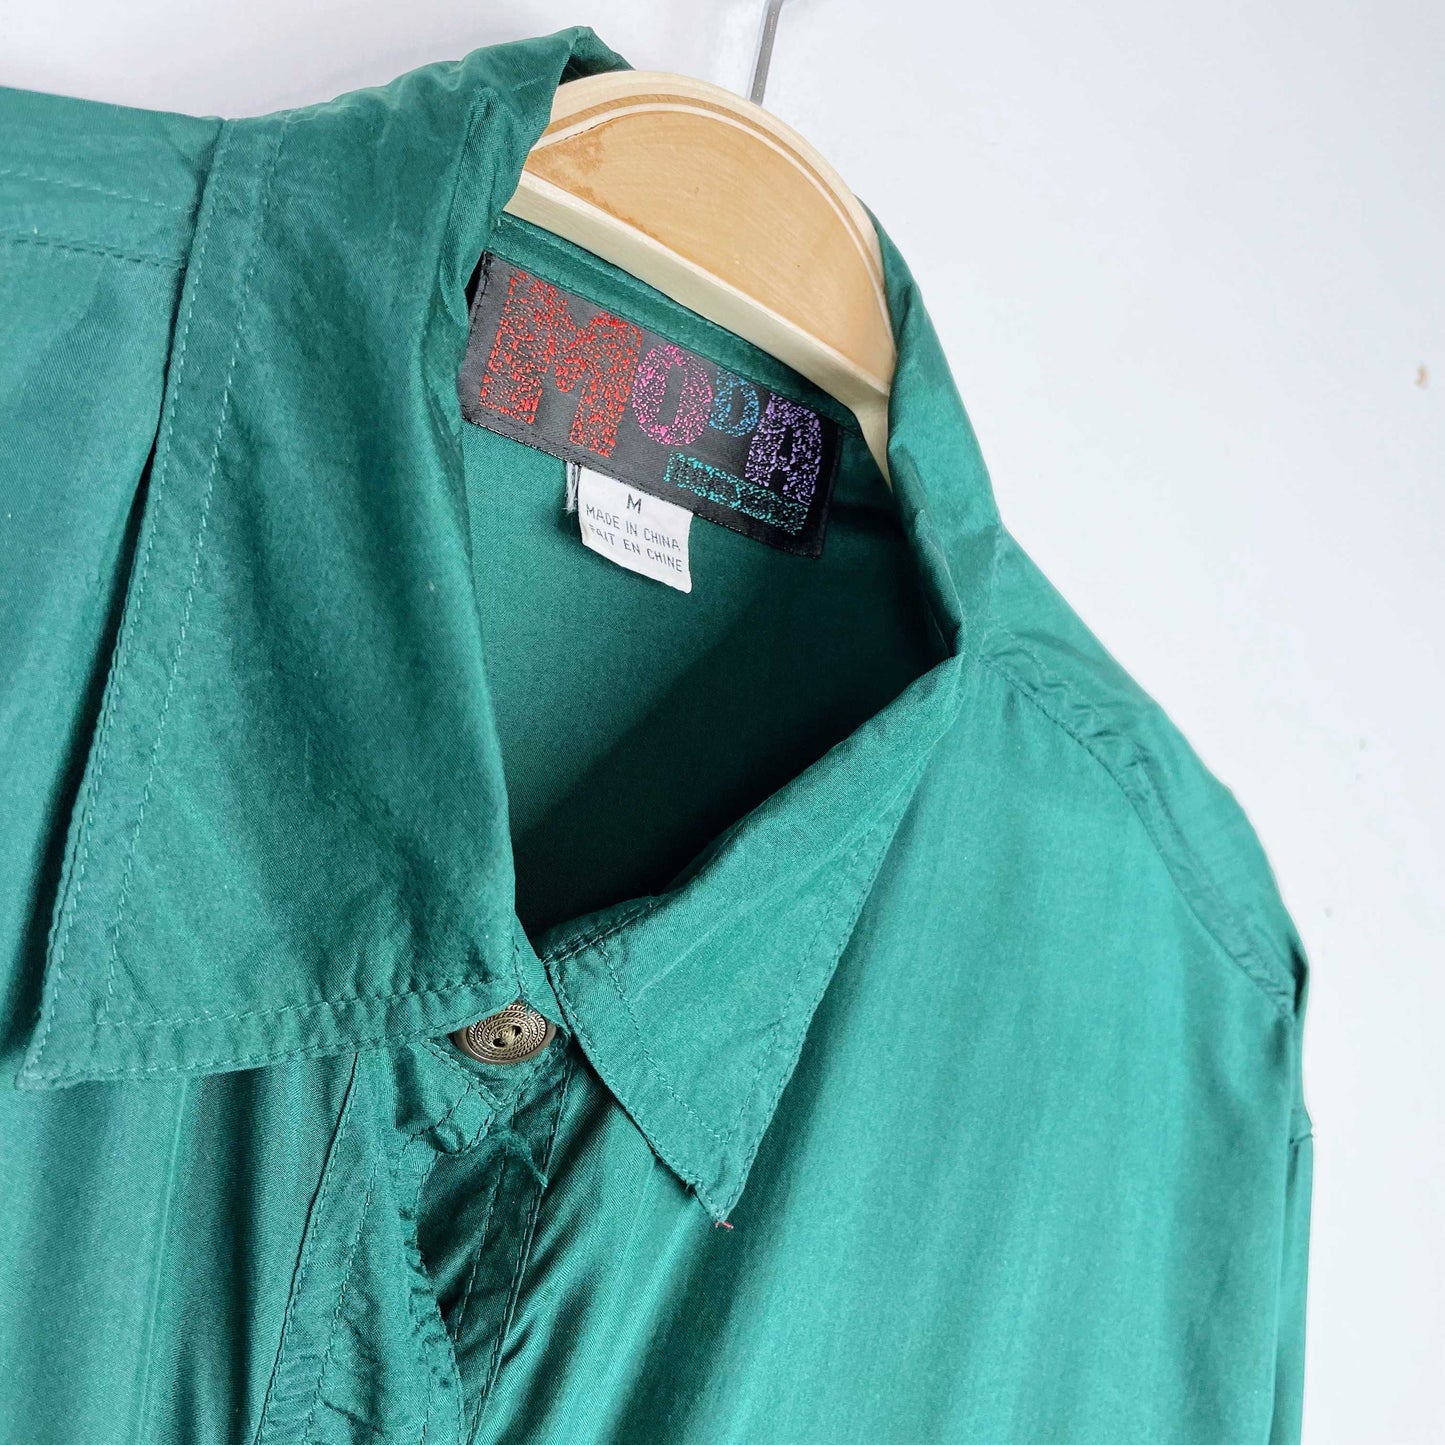 vintage moda green silk fringe western button down - size medium